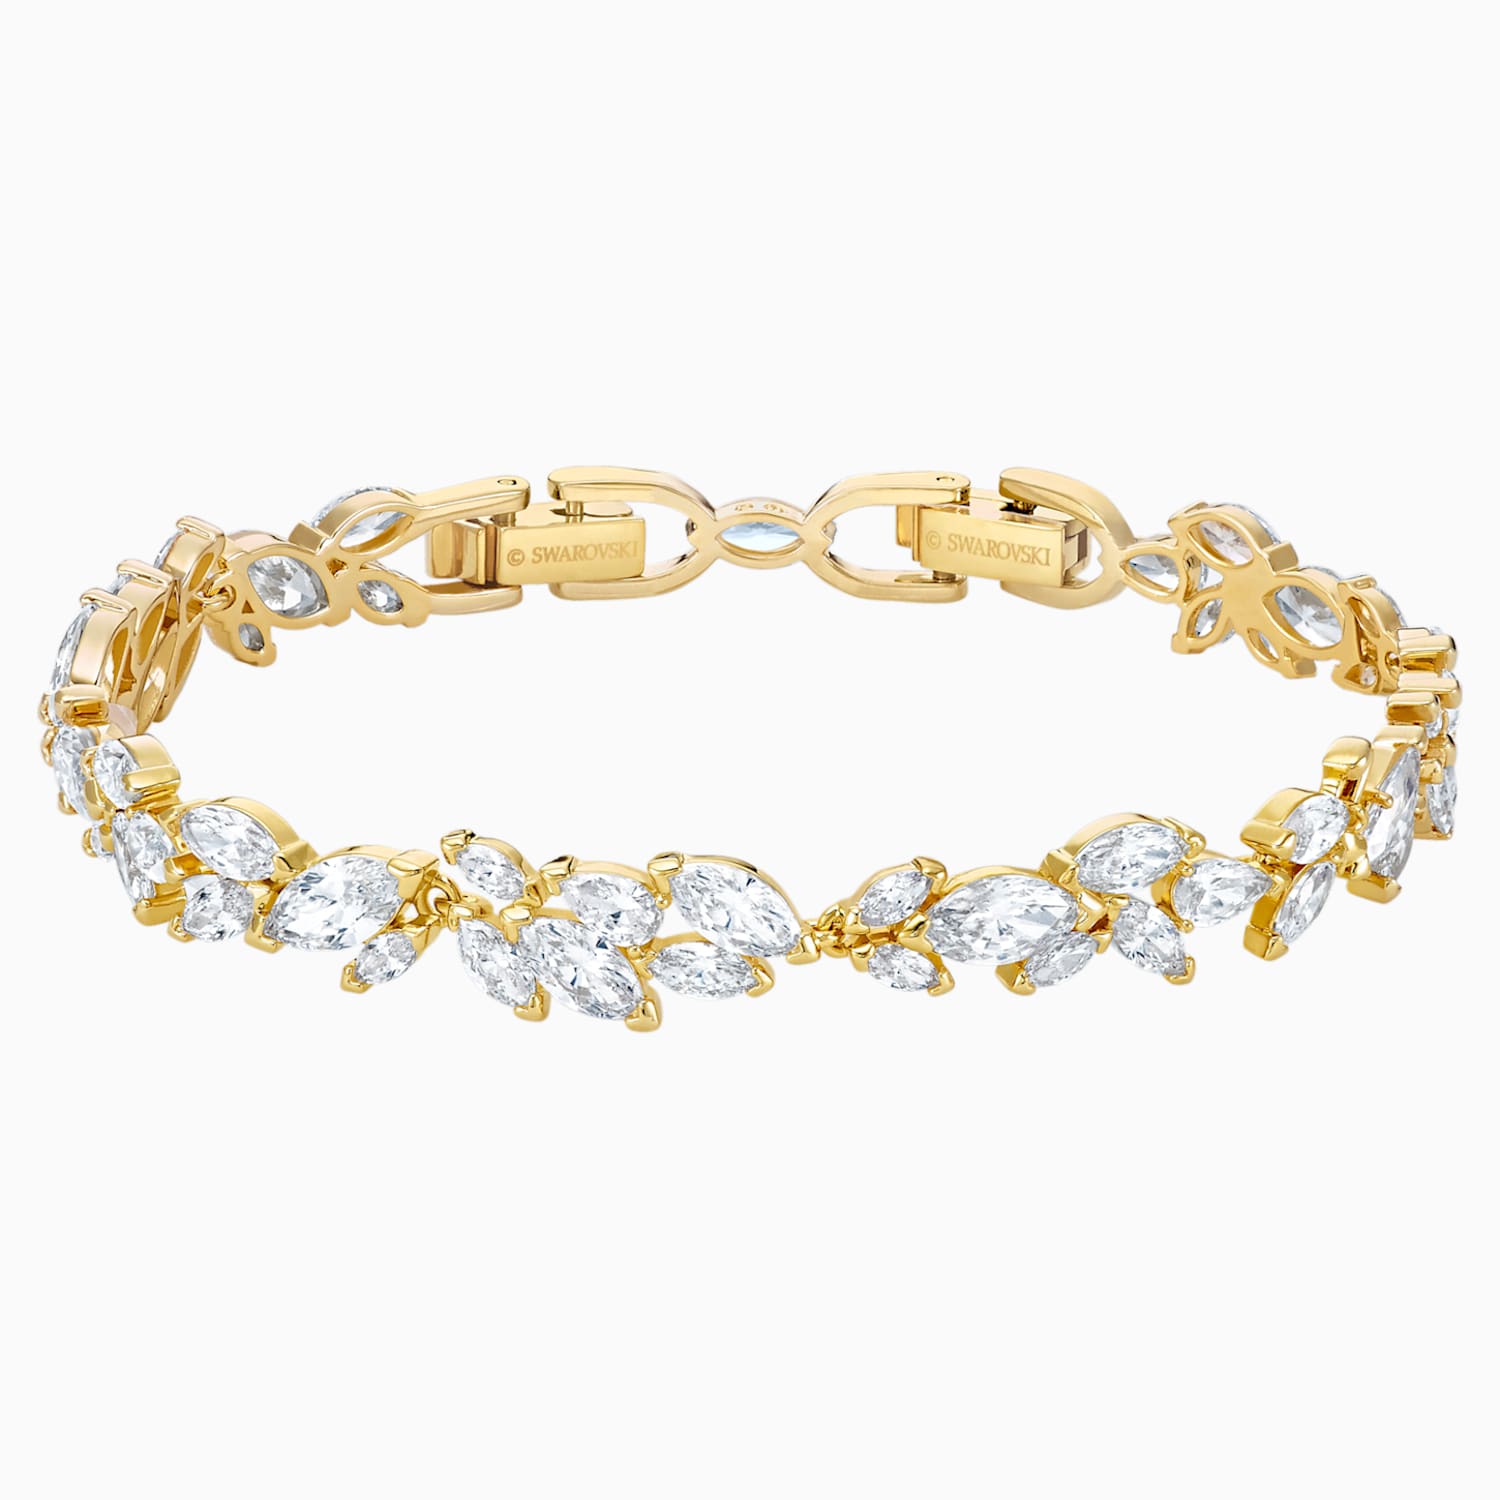 a gold bracelet